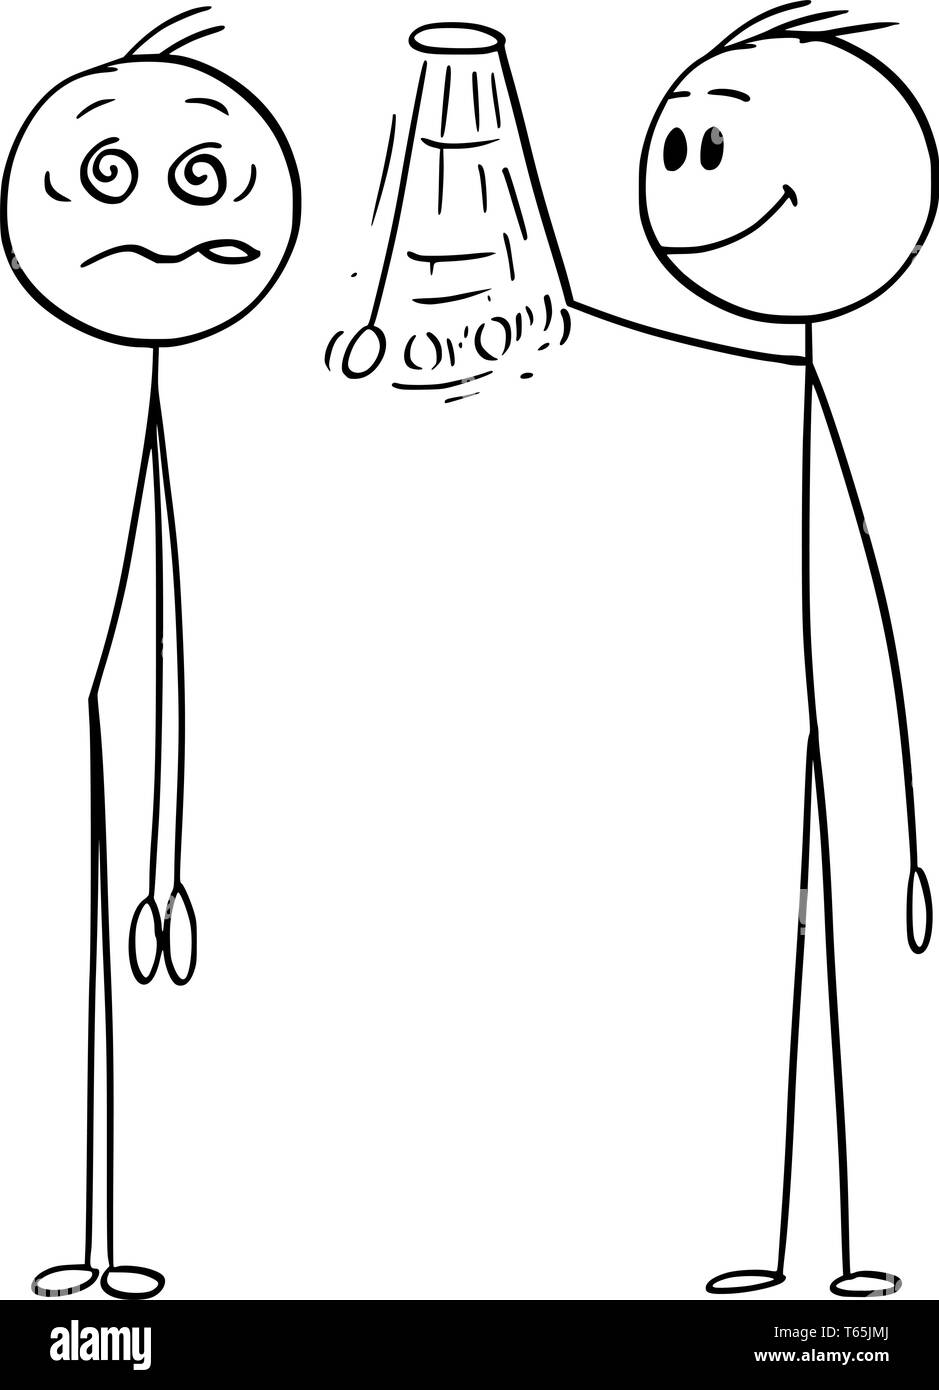 Cartoon stick figura disegno illustrazione concettuale del Hypnotist o psicologo hypnotize uomo o paziente. Concetto di ipnosi. Illustrazione Vettoriale